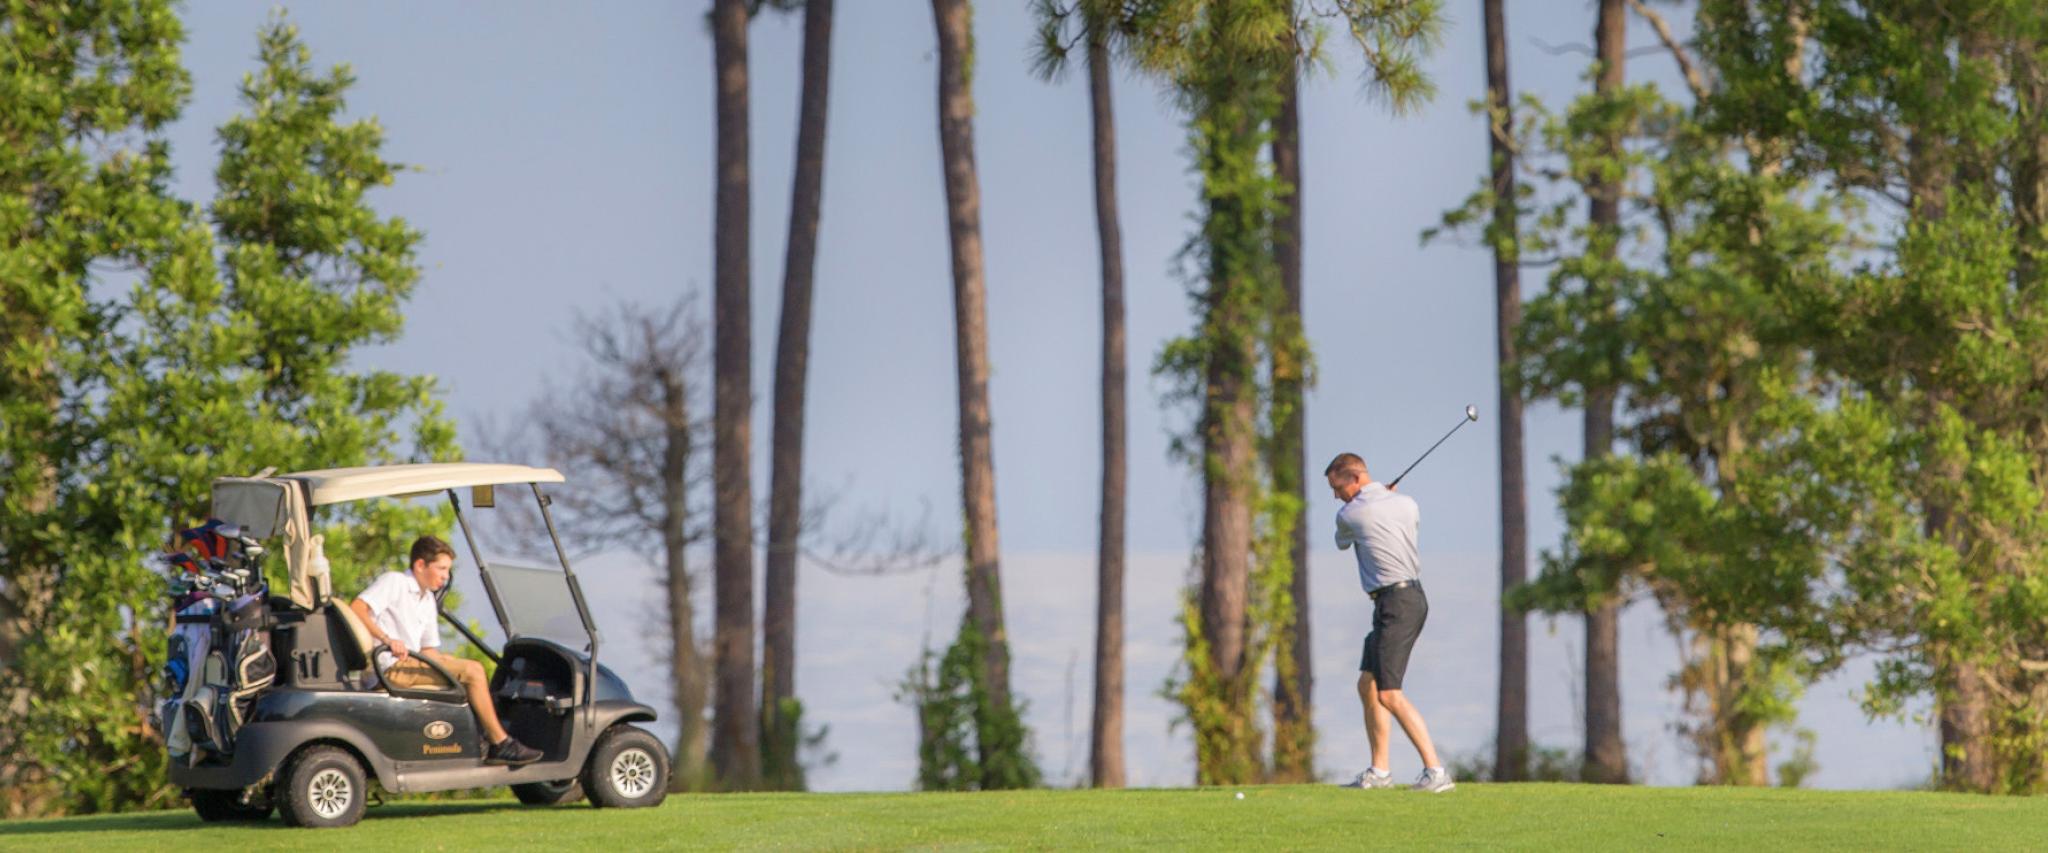 Peninsula Golf Course in Gulf Shores